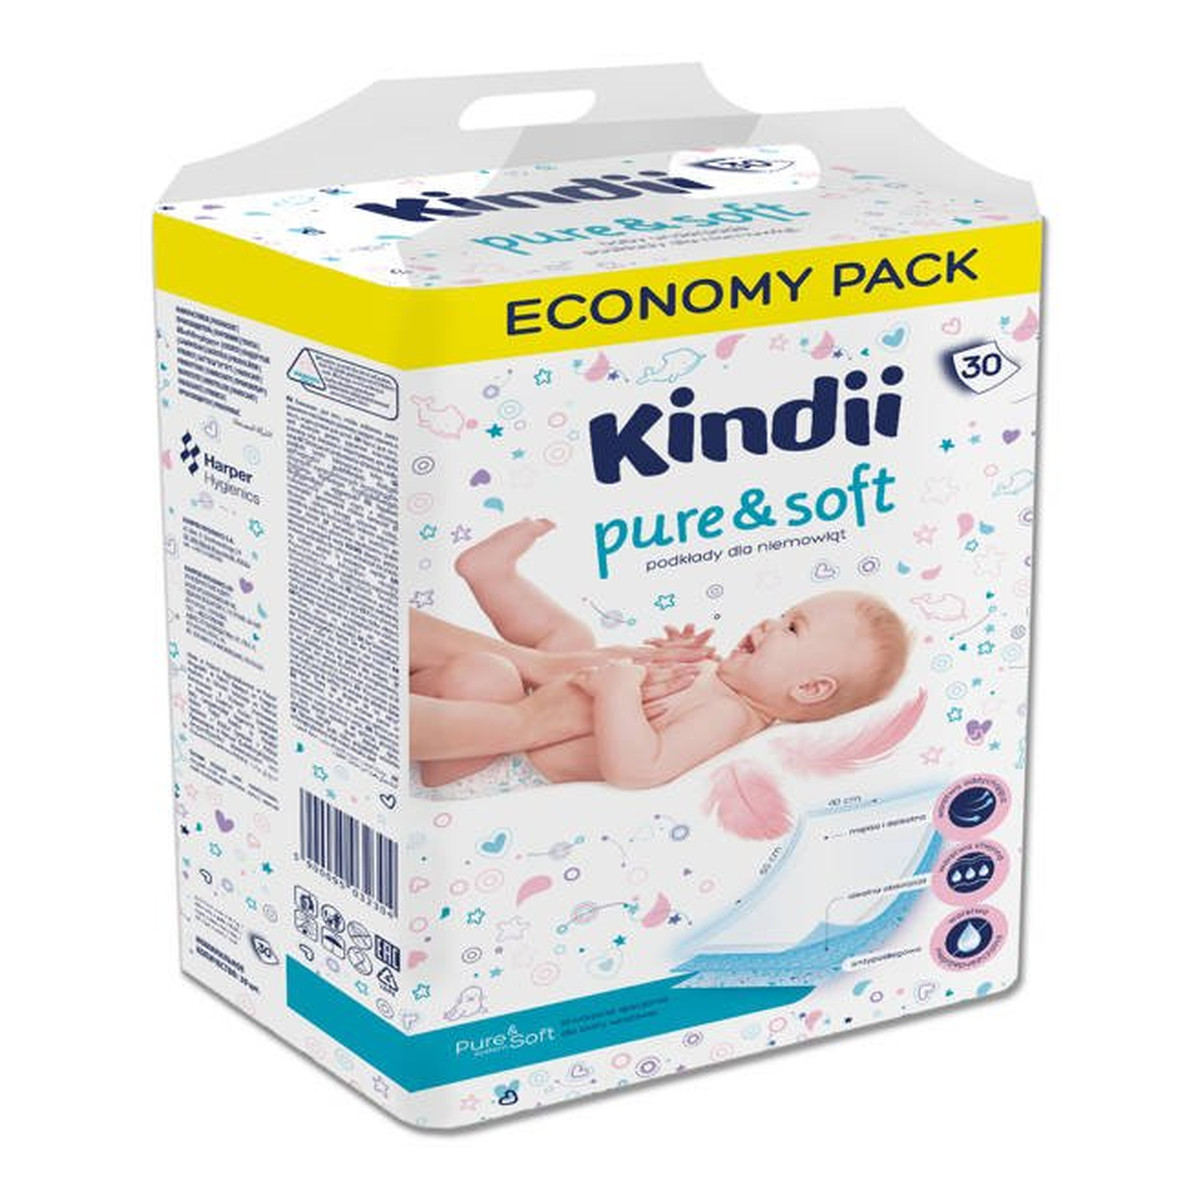 Kindii Pure & Soft Podkłady jednorazowe dla niemowląt 1op. - 30 szt